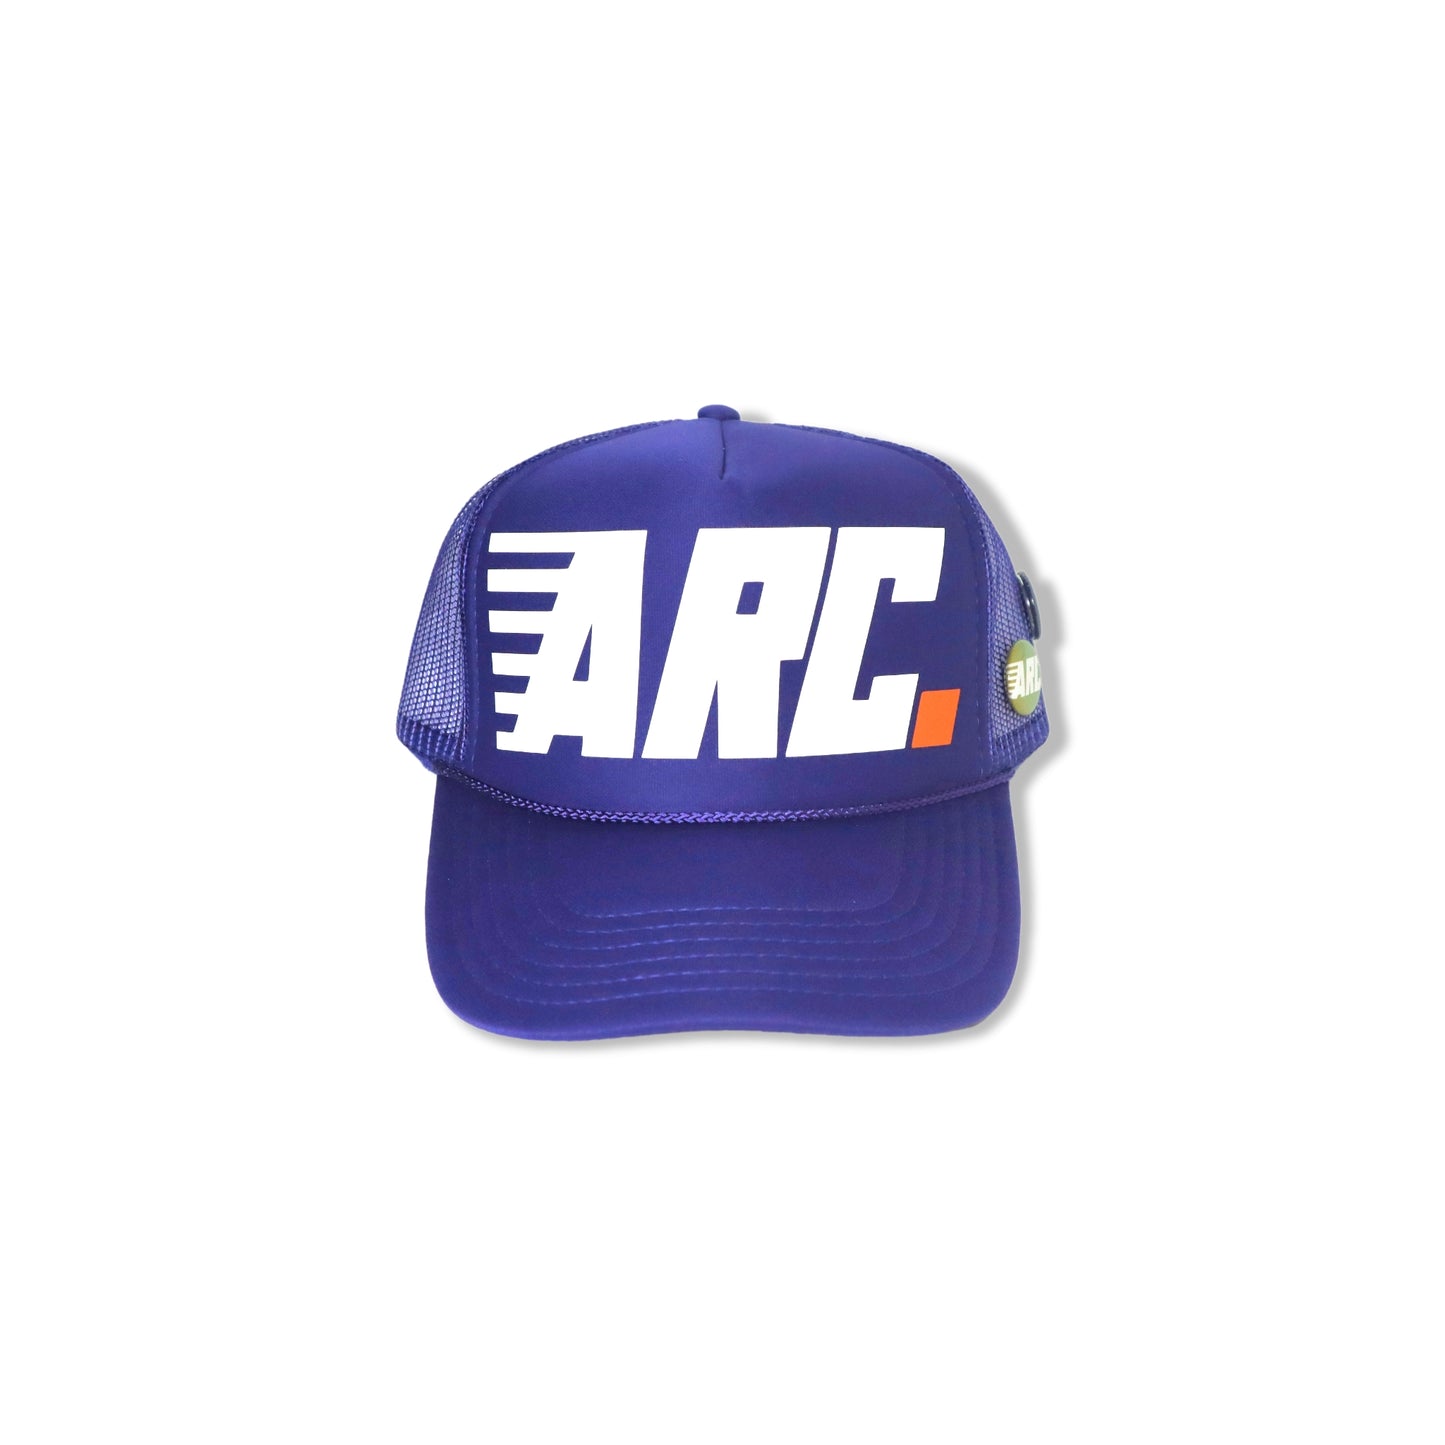 ARC. Trucker Hat